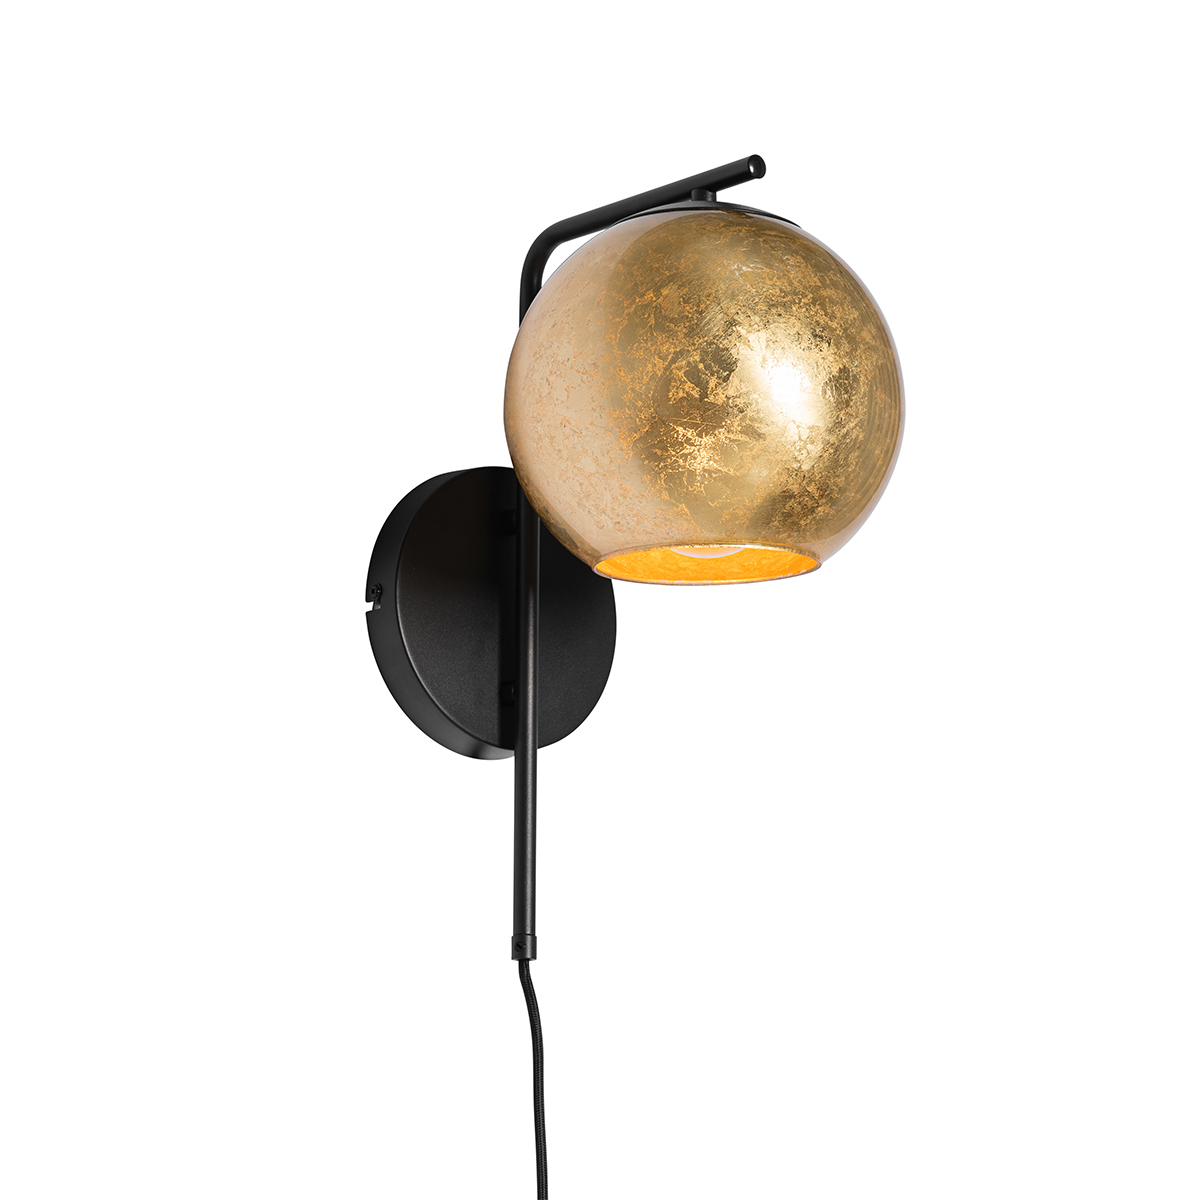 Design wandlamp goud met zwart - Bert